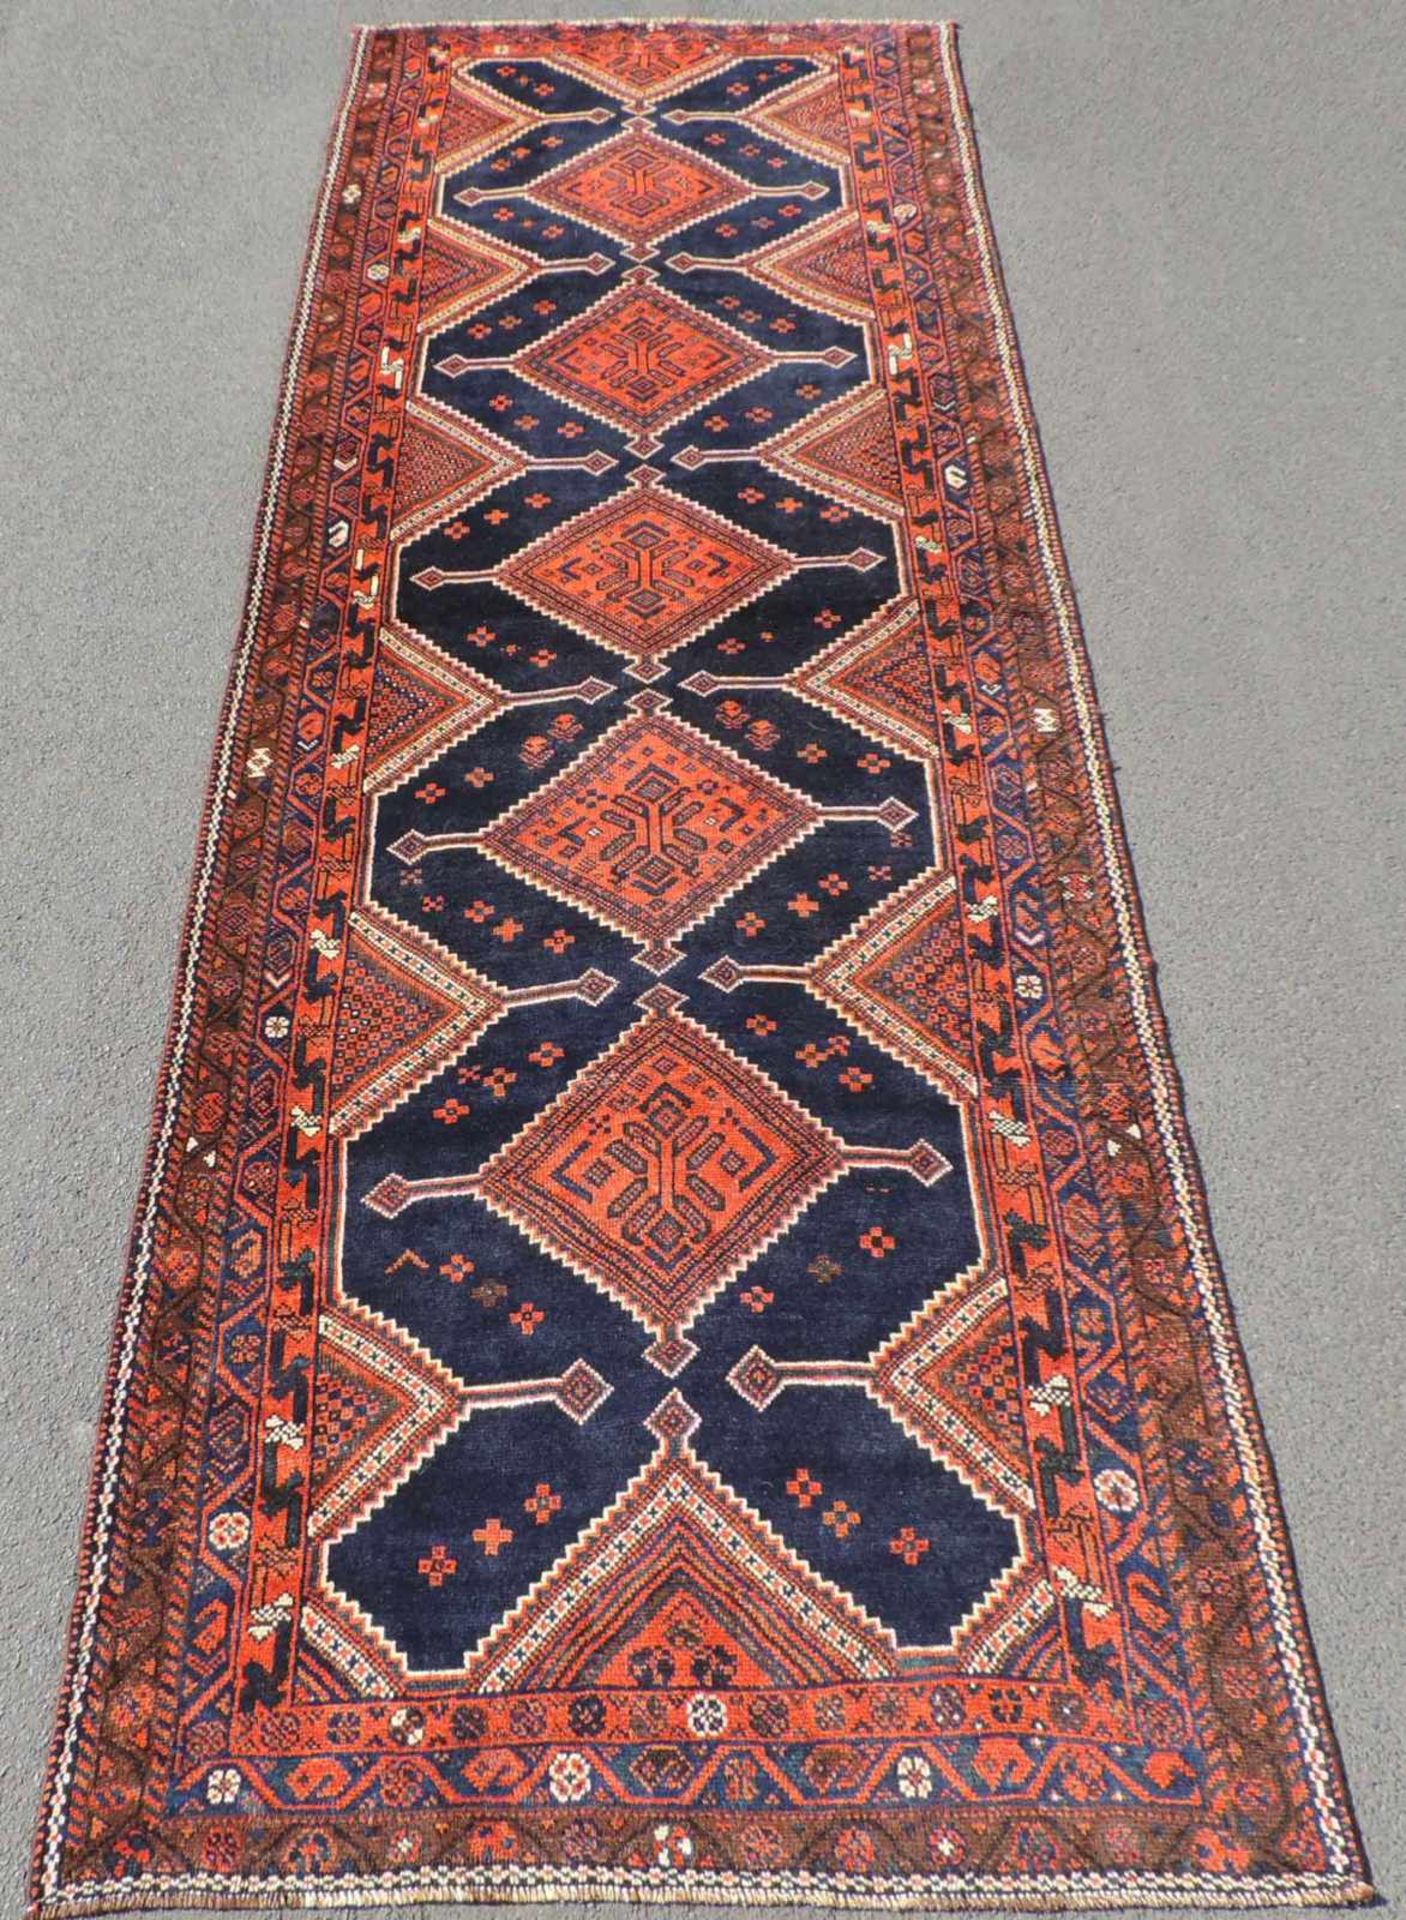 Lure Stammessteppich Iran, alt, um 1930. 339 cm x 115 cm. Handgeknüpft. Wolle auf Wolle. Lure tribal